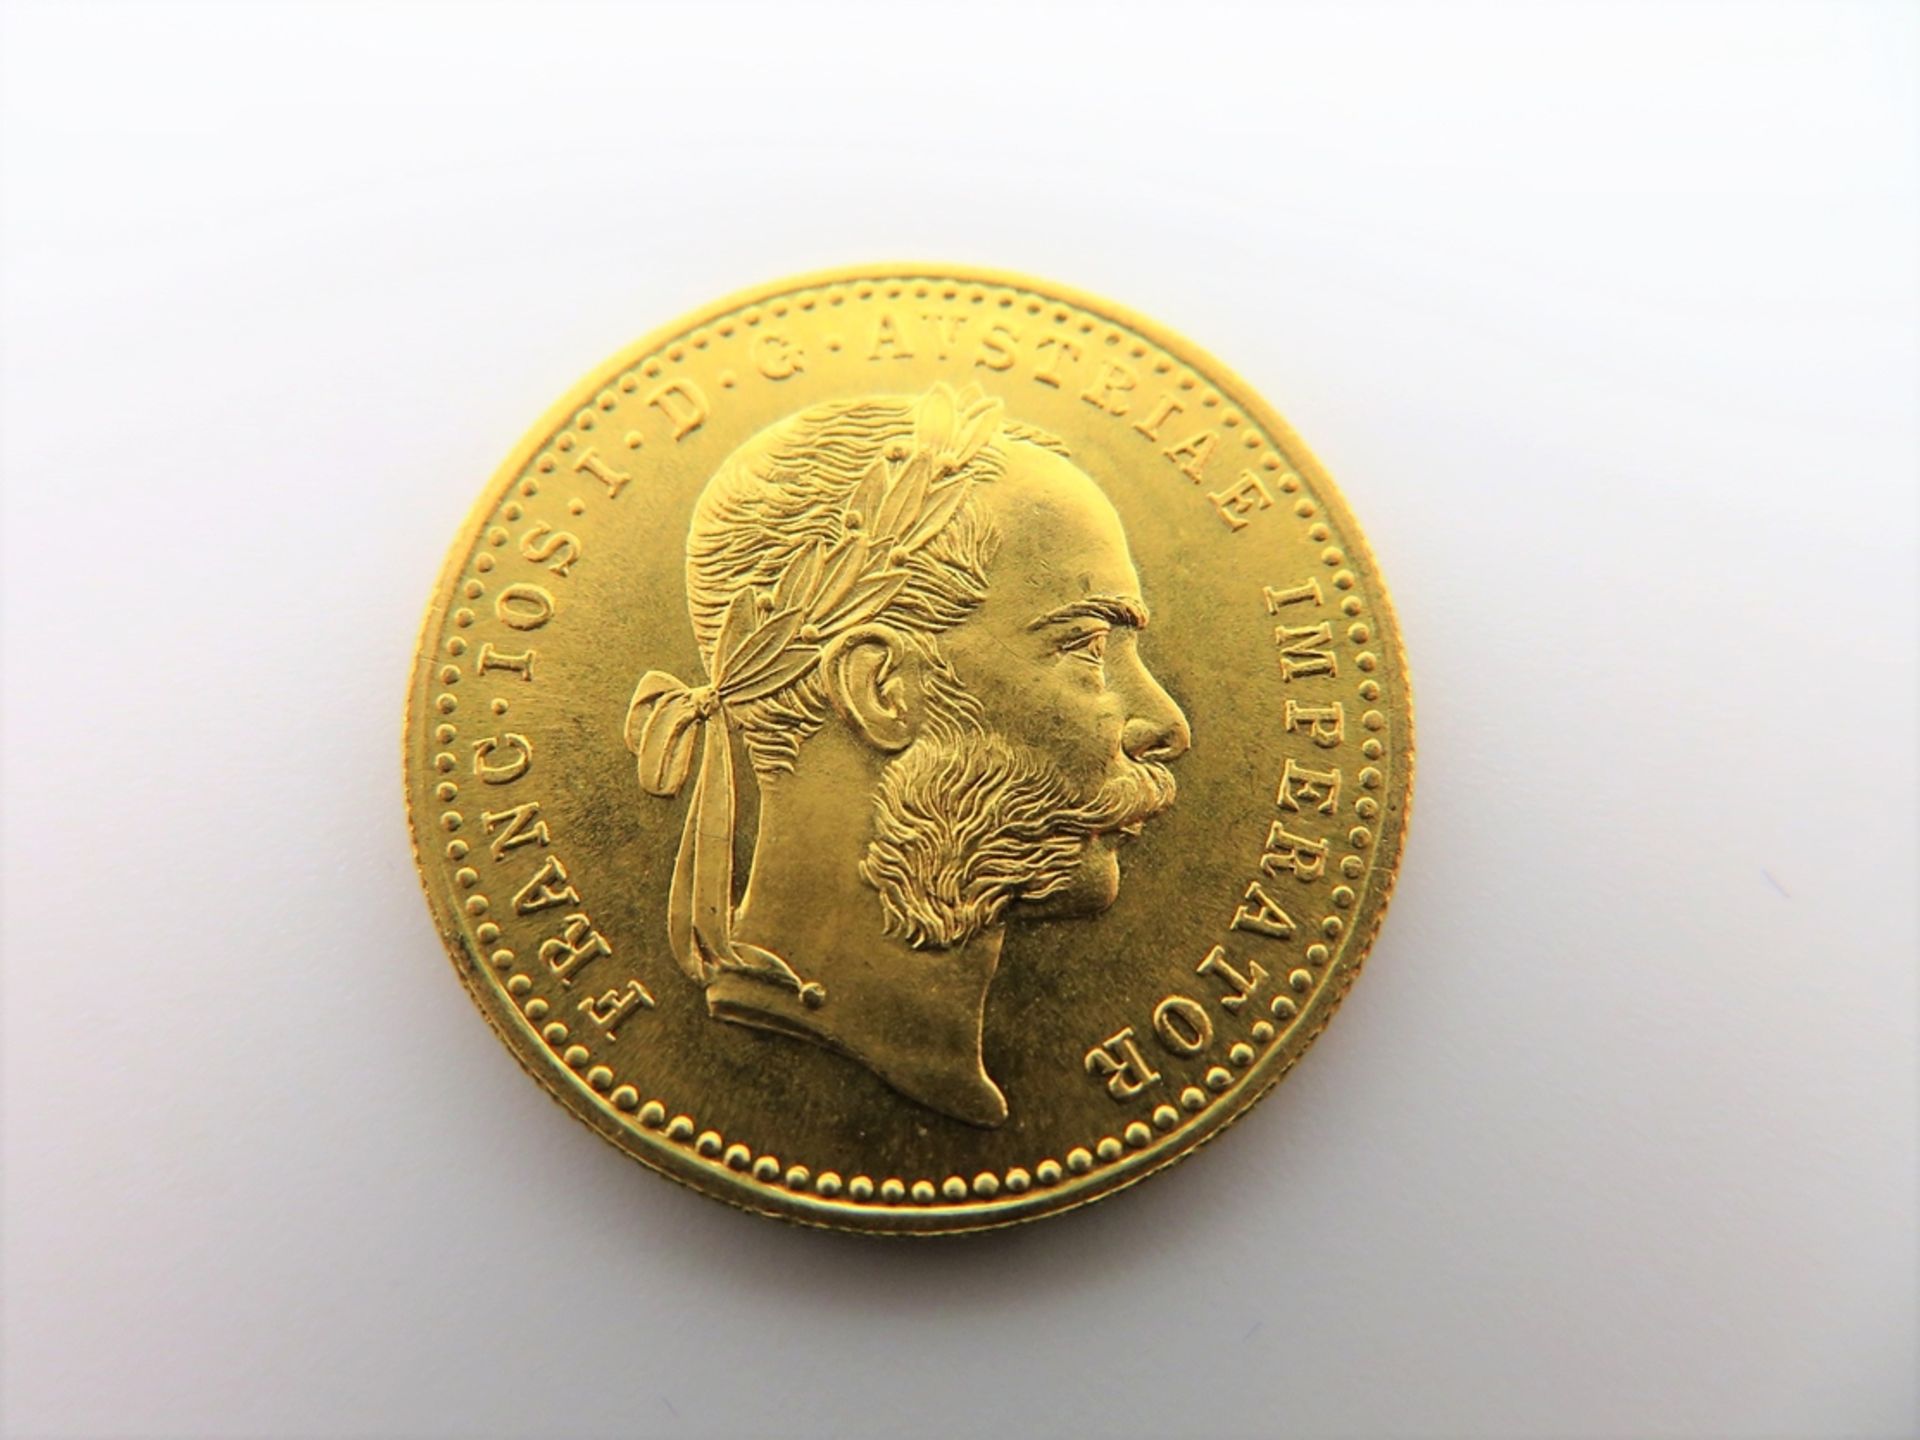 Goldmünze, Österreich, 1 Dukat, Kaiser Franz Joseph, 1915, 986er Gelbgold, 3,49 g, d 2 cm.